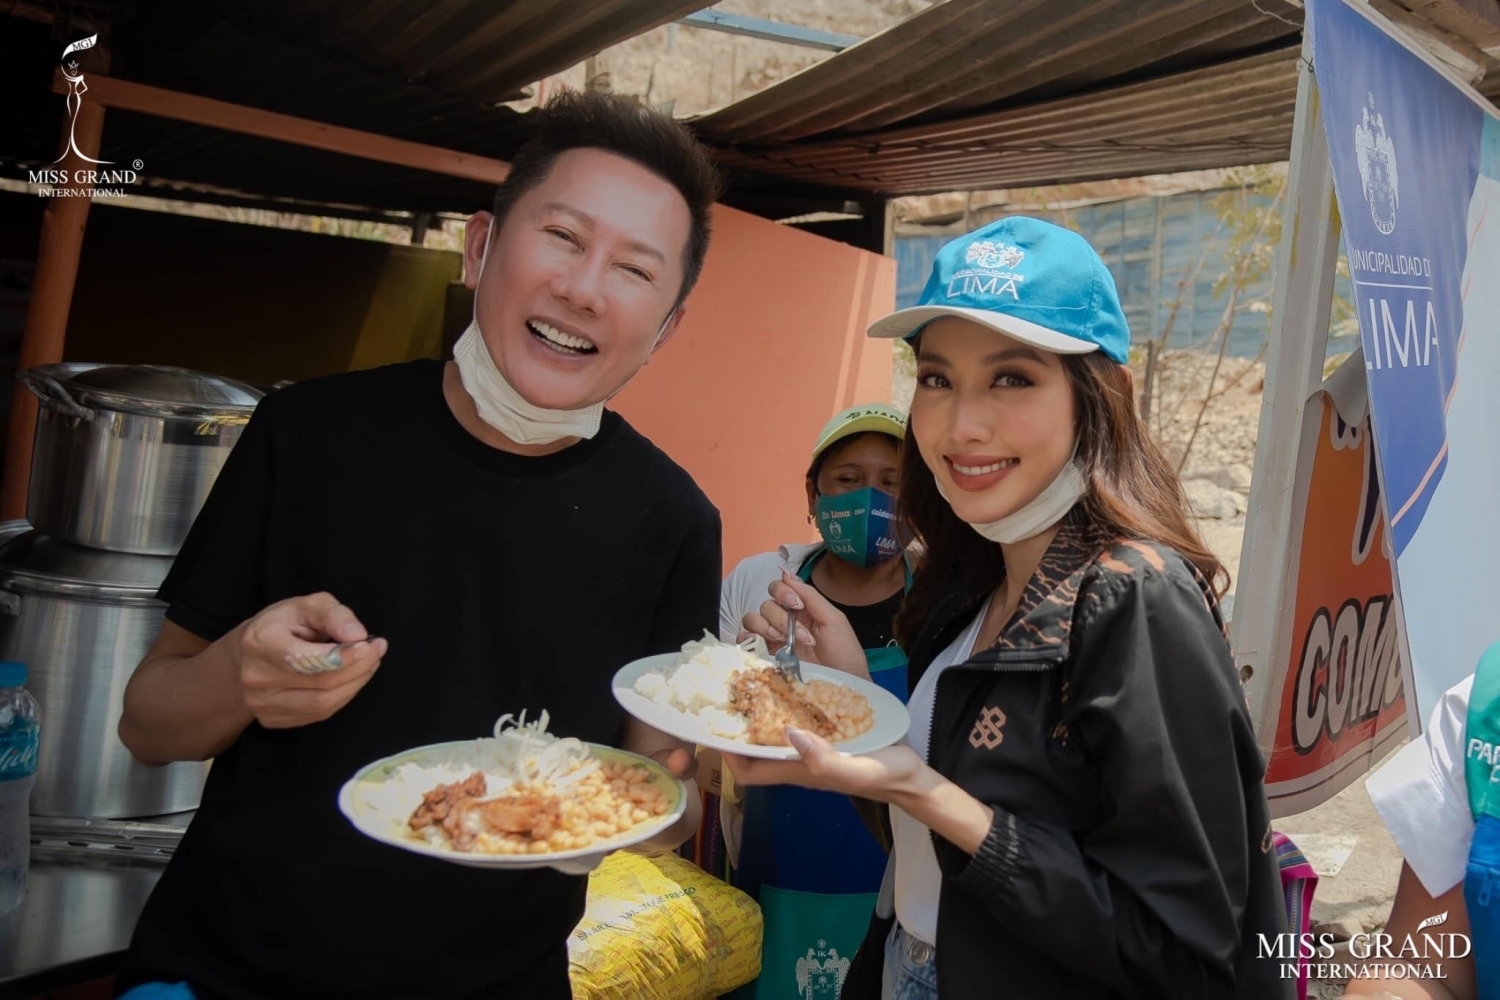 Hoa hậu Thùy Tiên ghi điểm bởi vẻ đẹp thân thiện trong chuyến công tác tại Peru